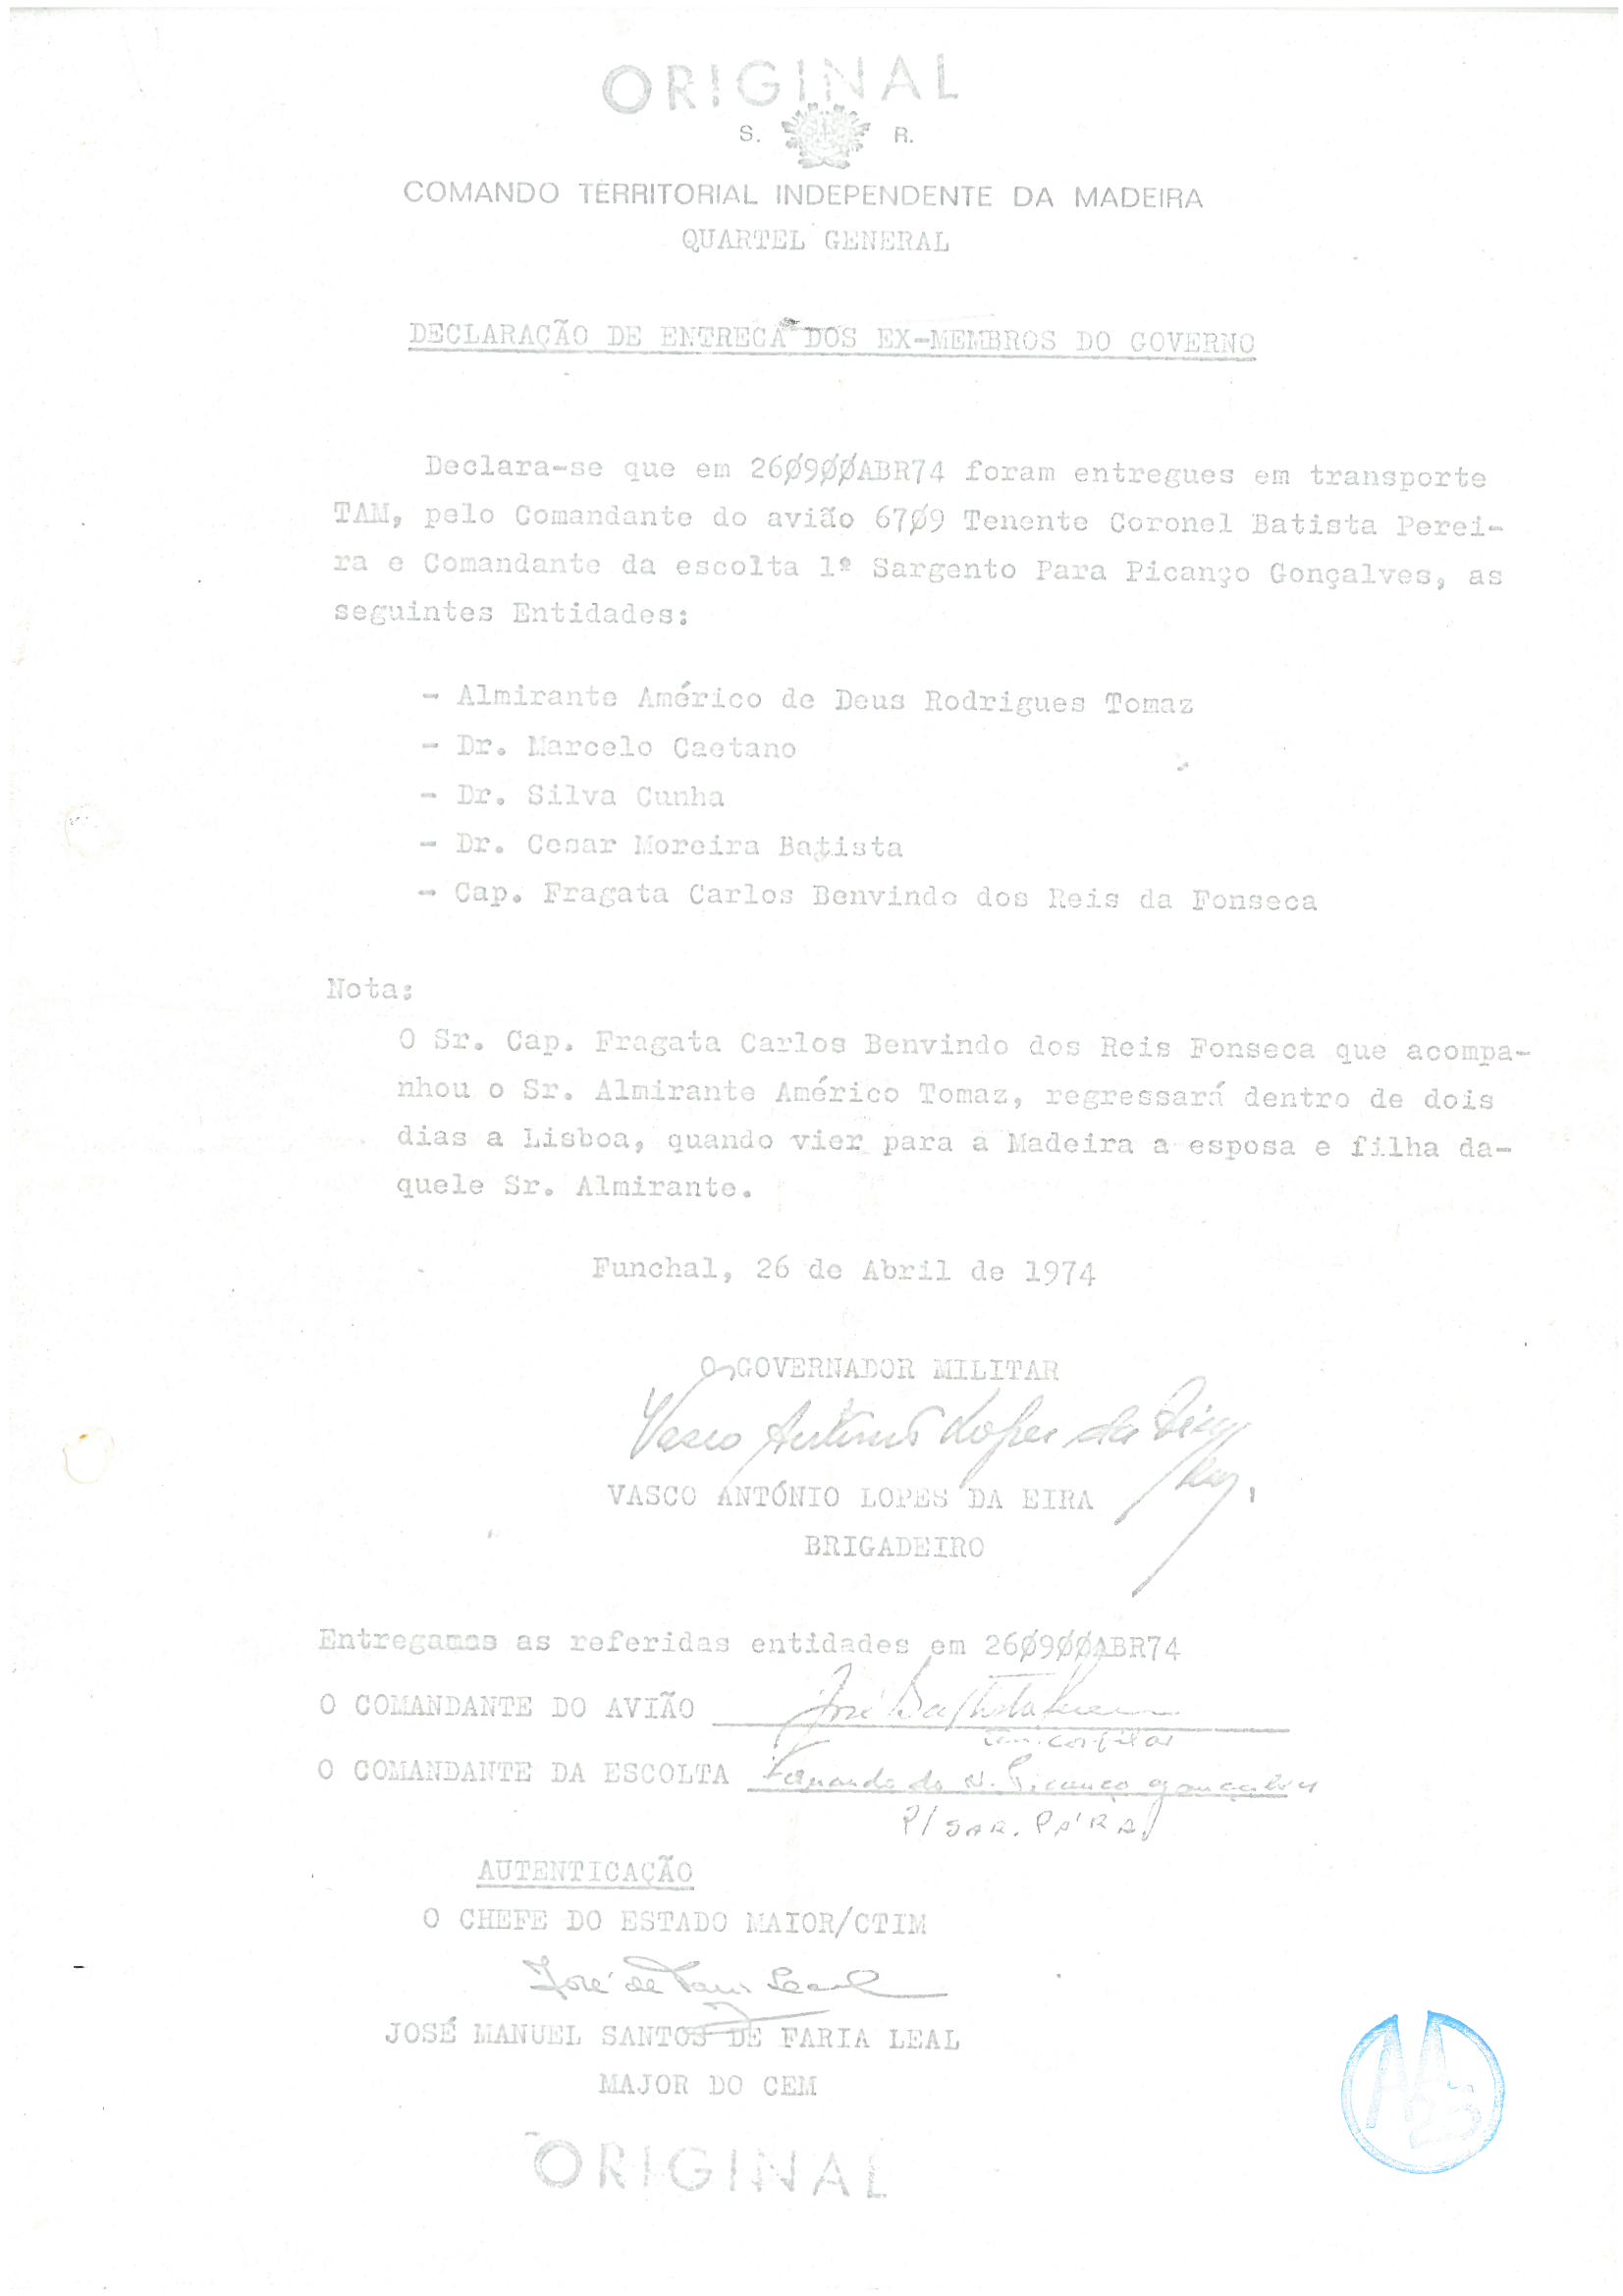 “Declaração de entrega dos ex-membros do governo”